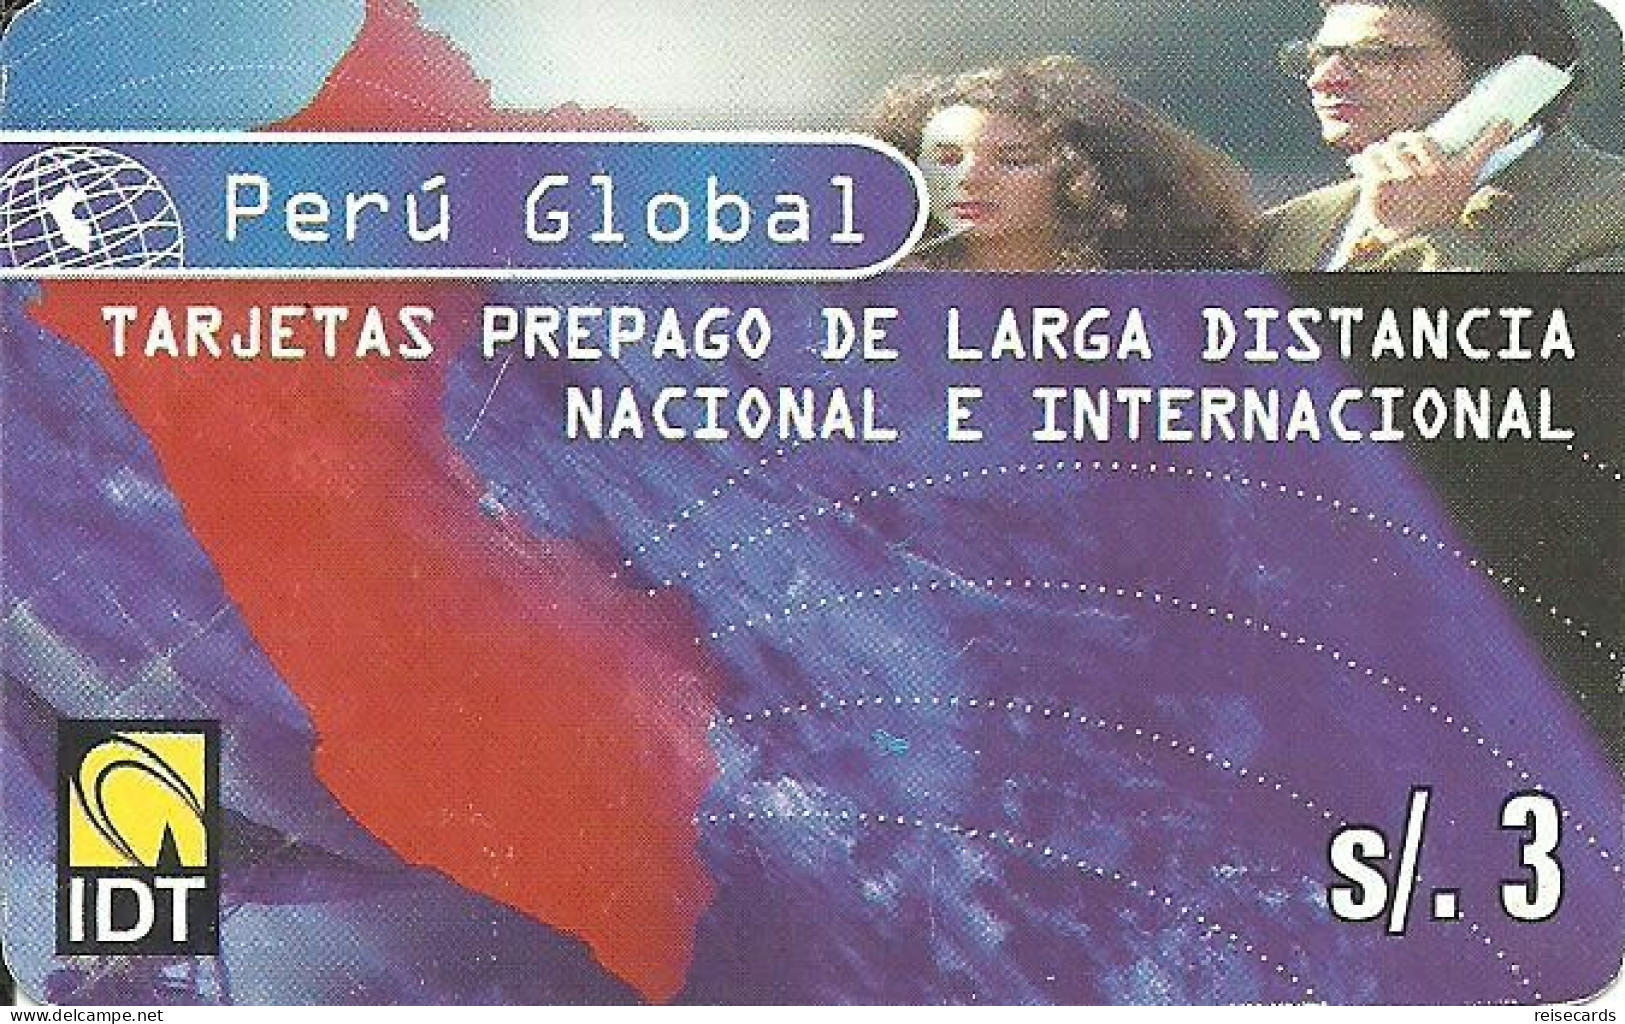 Peru: Prepaid IDT - Alcard Perú Global - Peru